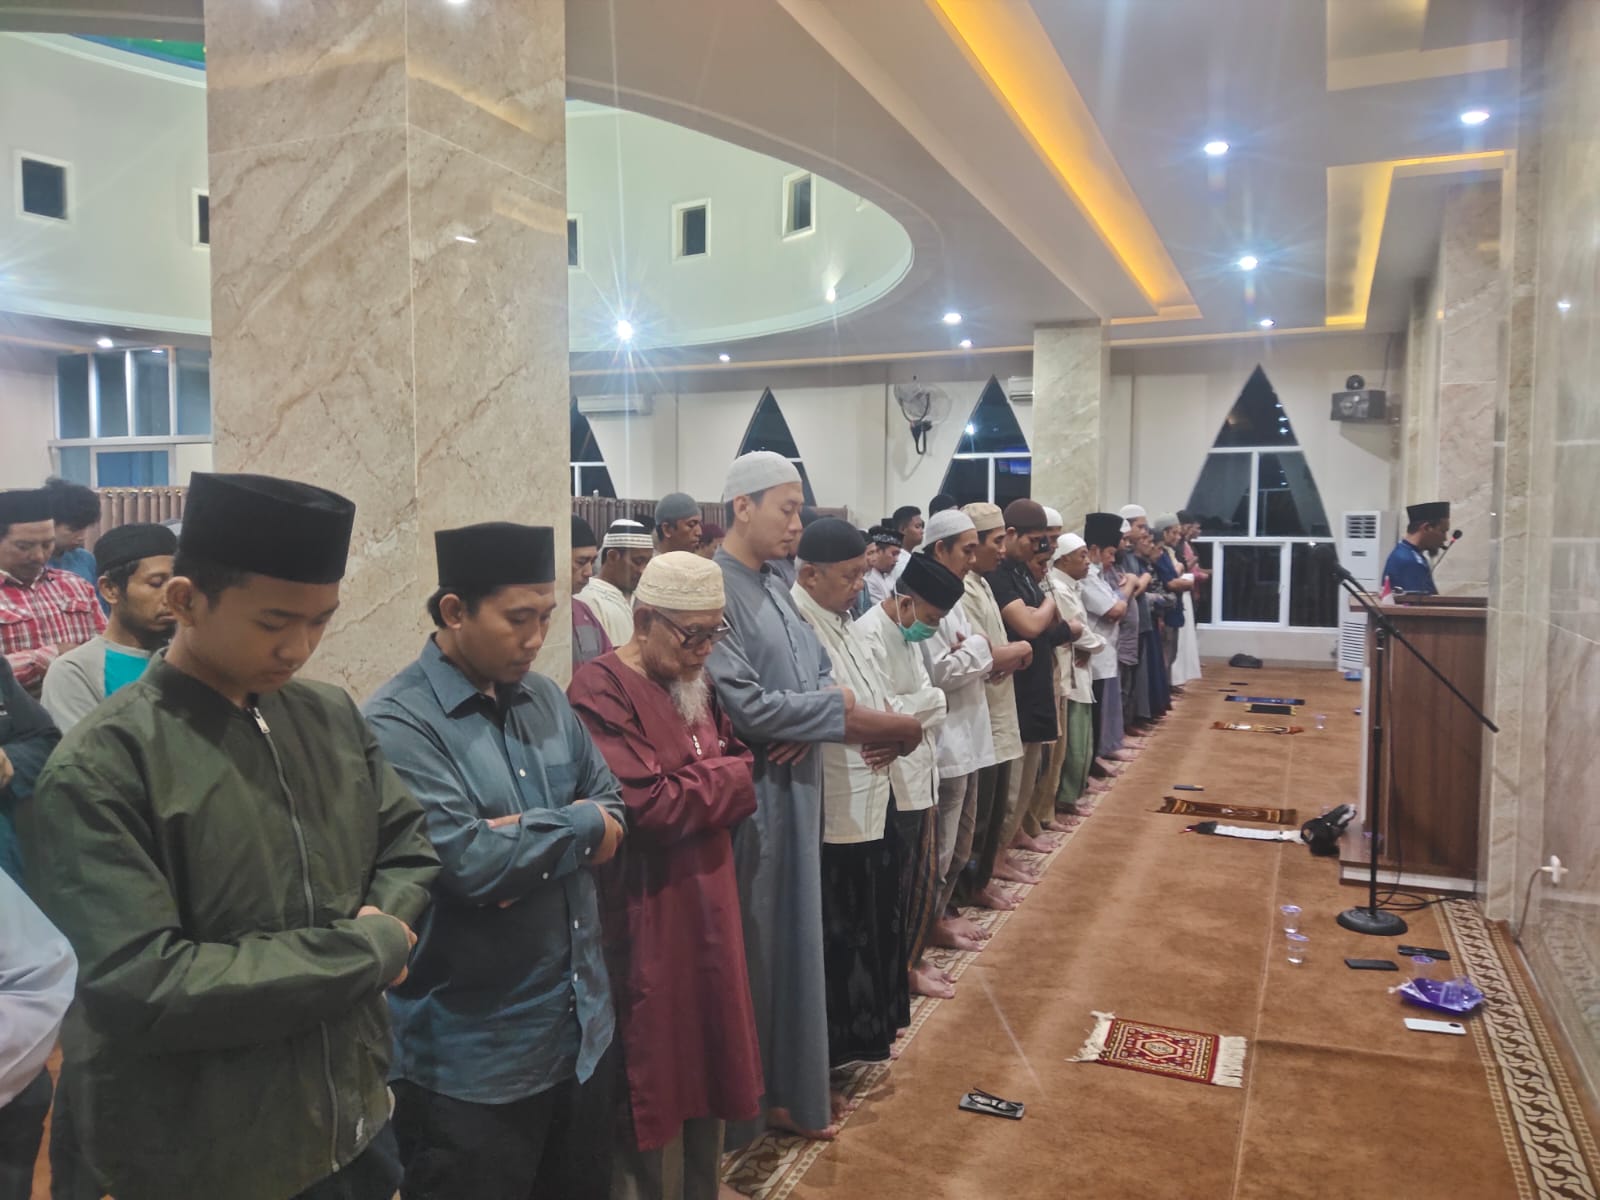 Ini Daftar Masjid Di Bandar Lampung Selenggarakan Tarawih 1 Malam 1 Juz, Lengkap Dengan Alamatnya 